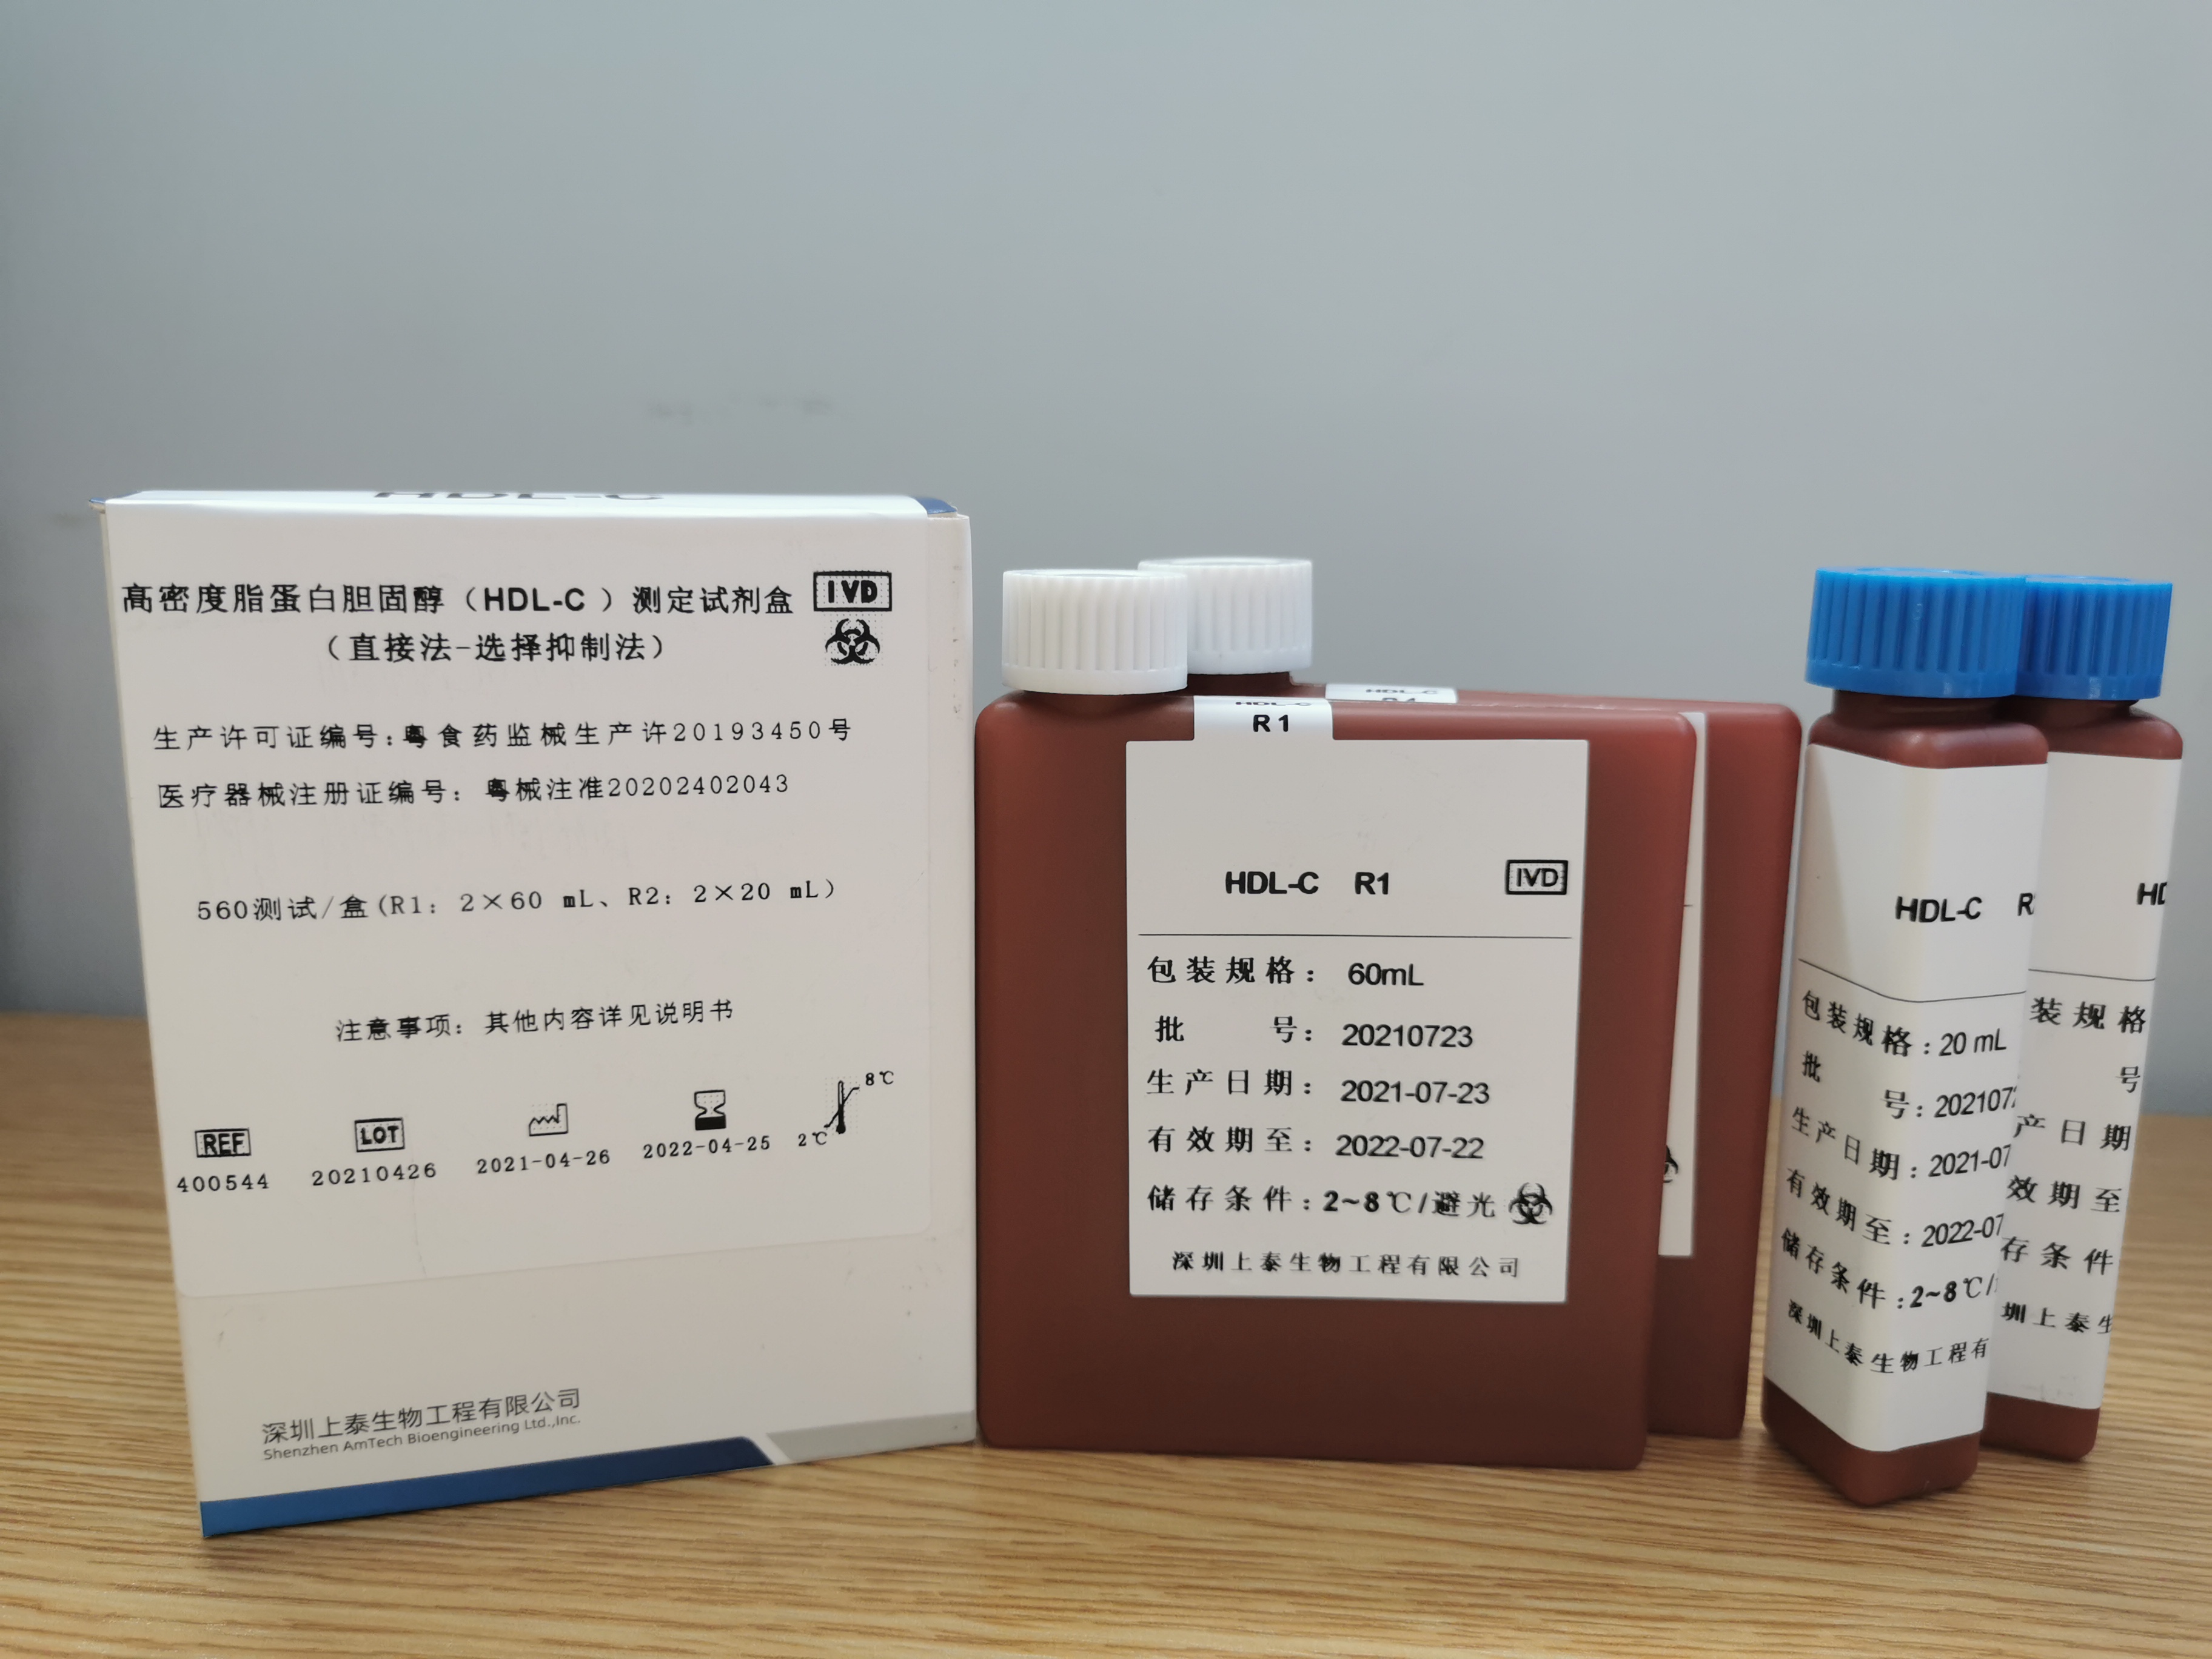 【深圳上泰】高密度脂蛋白胆固醇(HDL-C)测定试剂盒(直接法-选择抑制法)-云医购